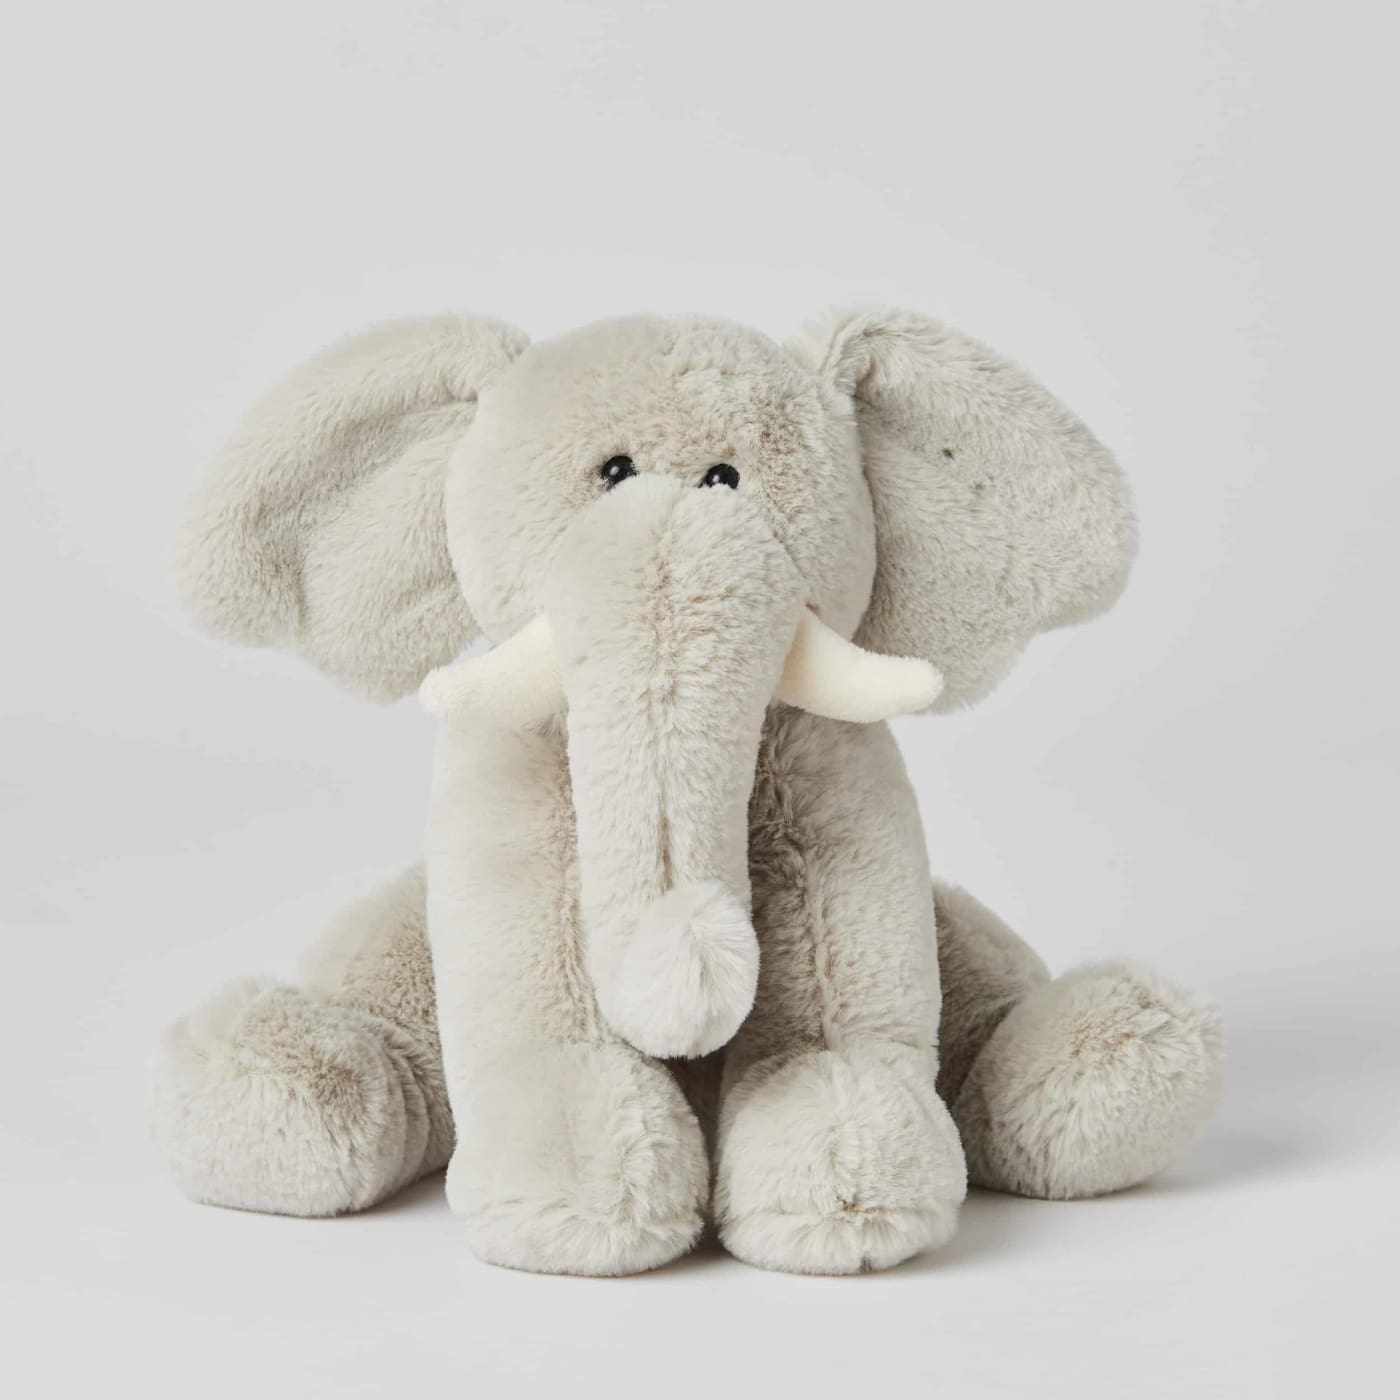 Jiggle & Giggle Soft Toy - Small Grey Elephant - Grey Elephant - TOYS & PLAY - PLUSH TOYS